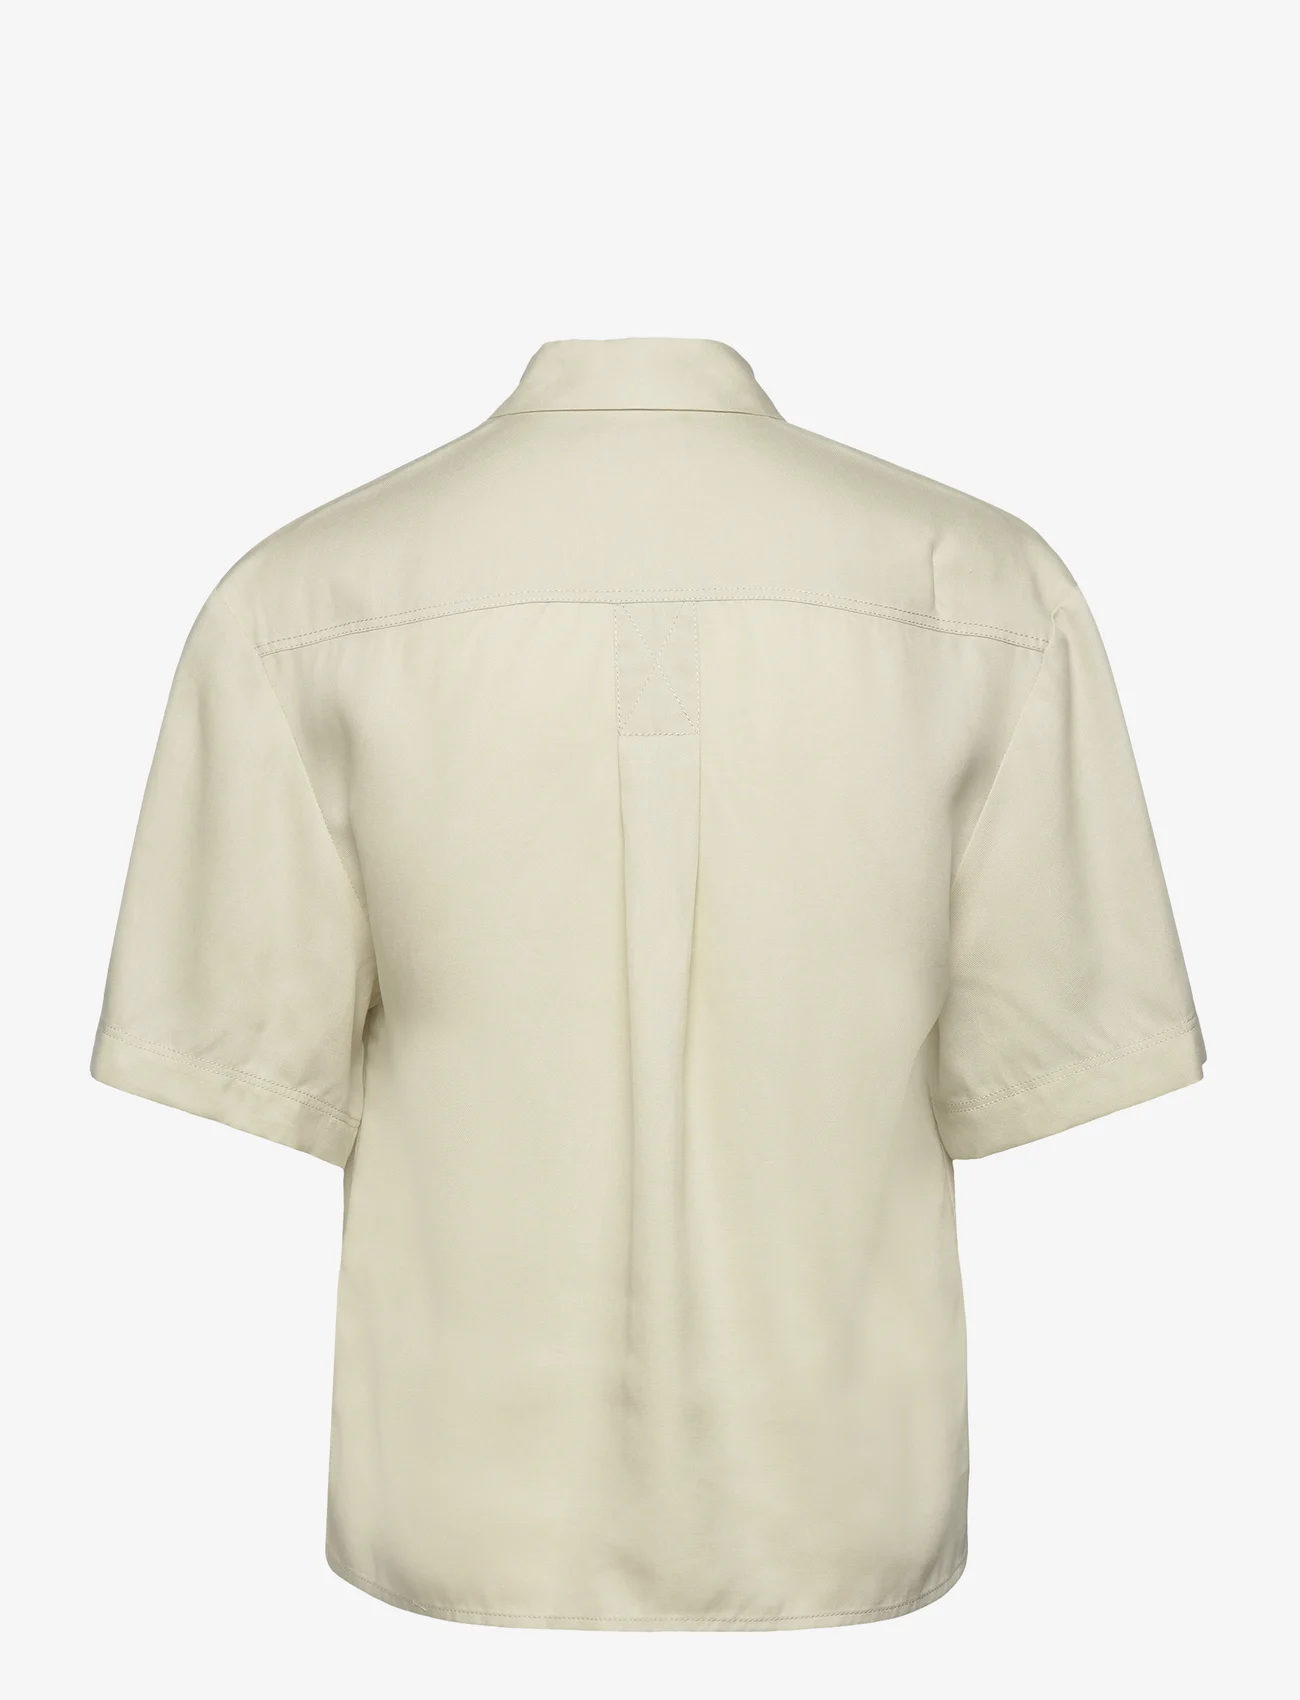 Calvin Klein - TENCEL SS BLOUSE - kortermede skjorter - vintage ivory - 1